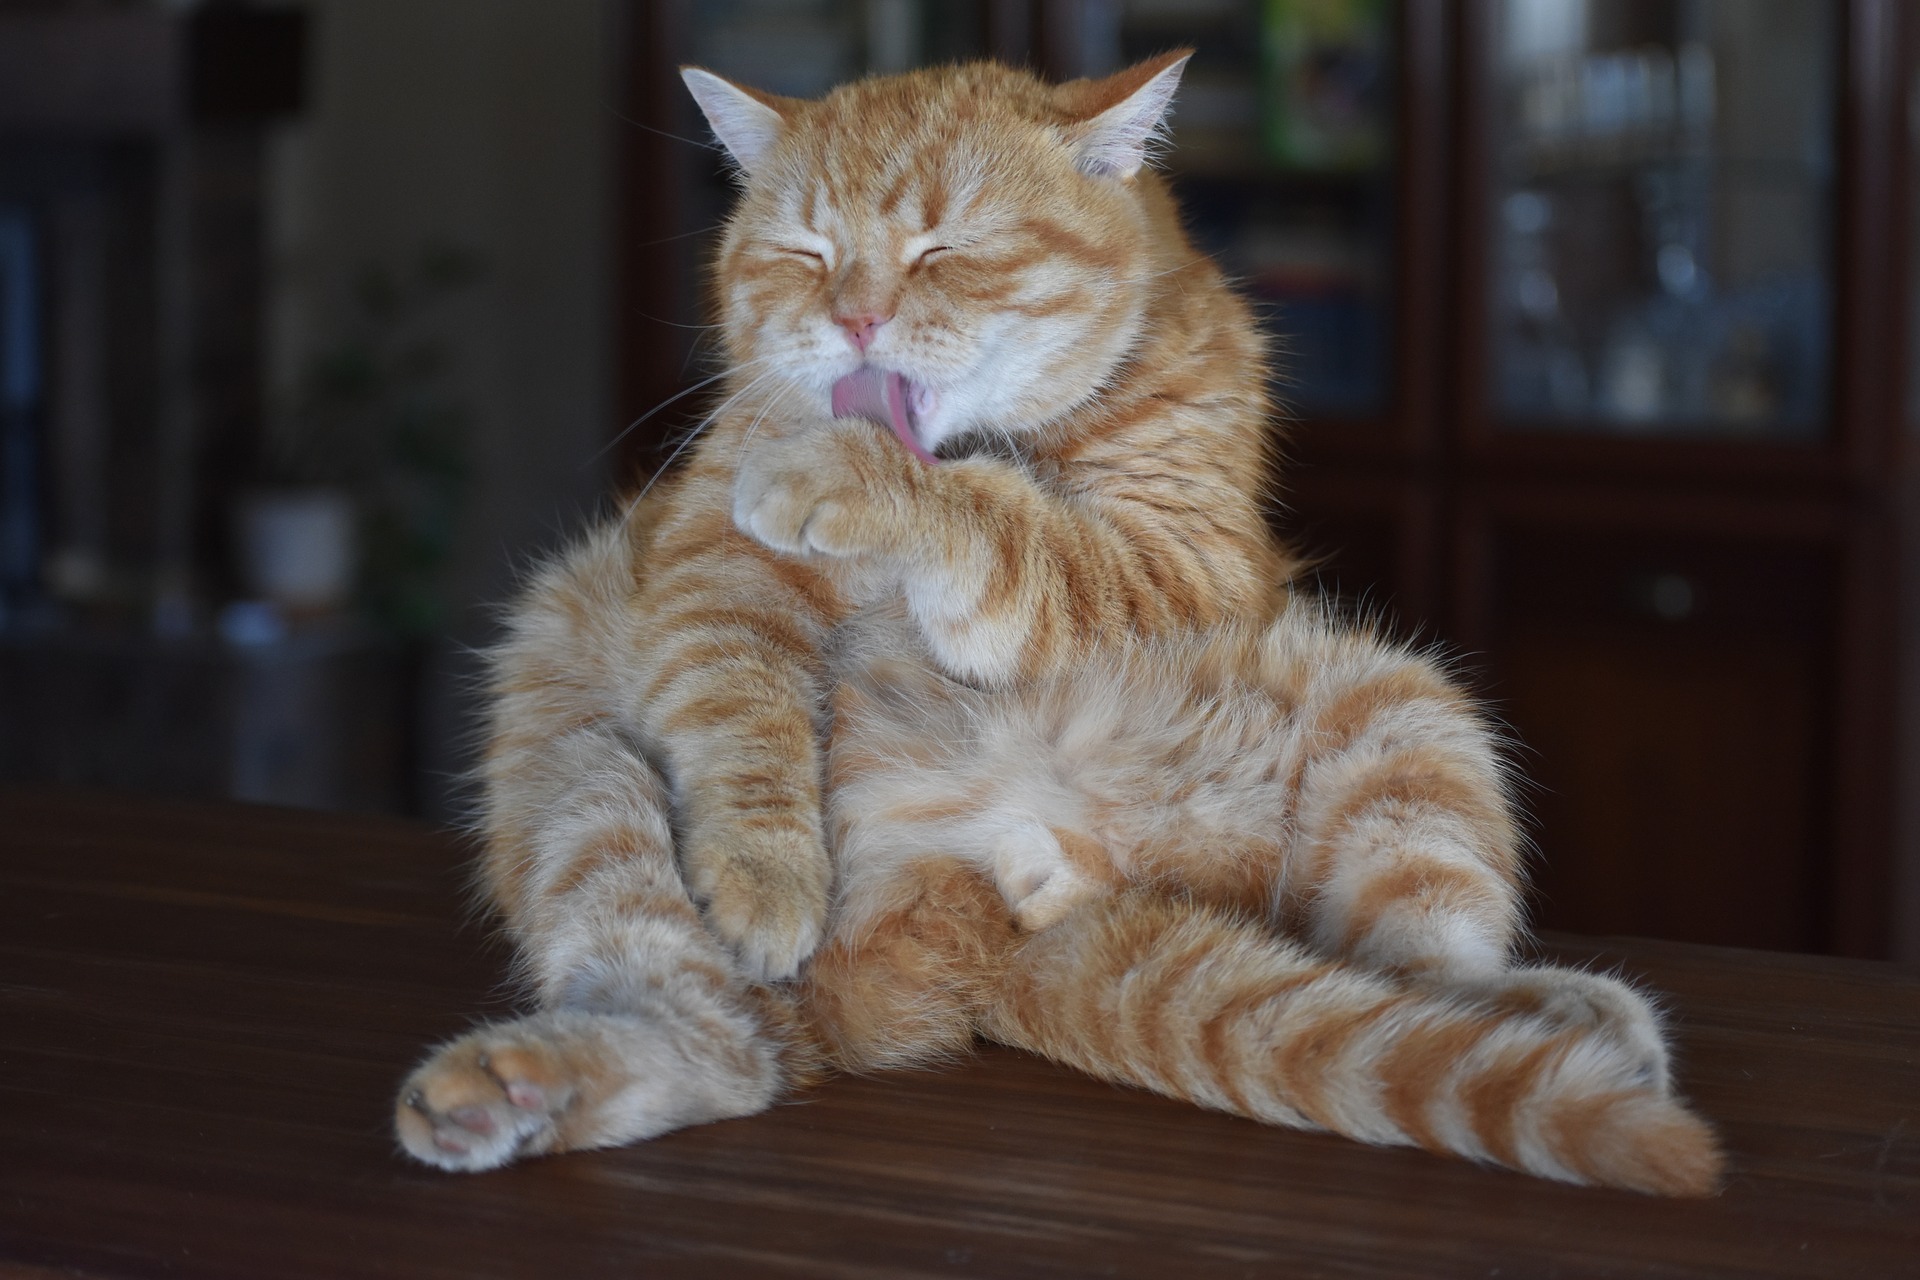 Die Symptome einer Blasenentzündung bei Katzen können unterschiedlich sein - häufigere Versuche, sich selbst zu töten, das Gehen in die Katzentoilette zu vermeiden, sich außerhalb der Katzentoilette um sich selbst zu kümmern, Vokalisierung, Aggression, größerer Durst oder verminderter Appetit.